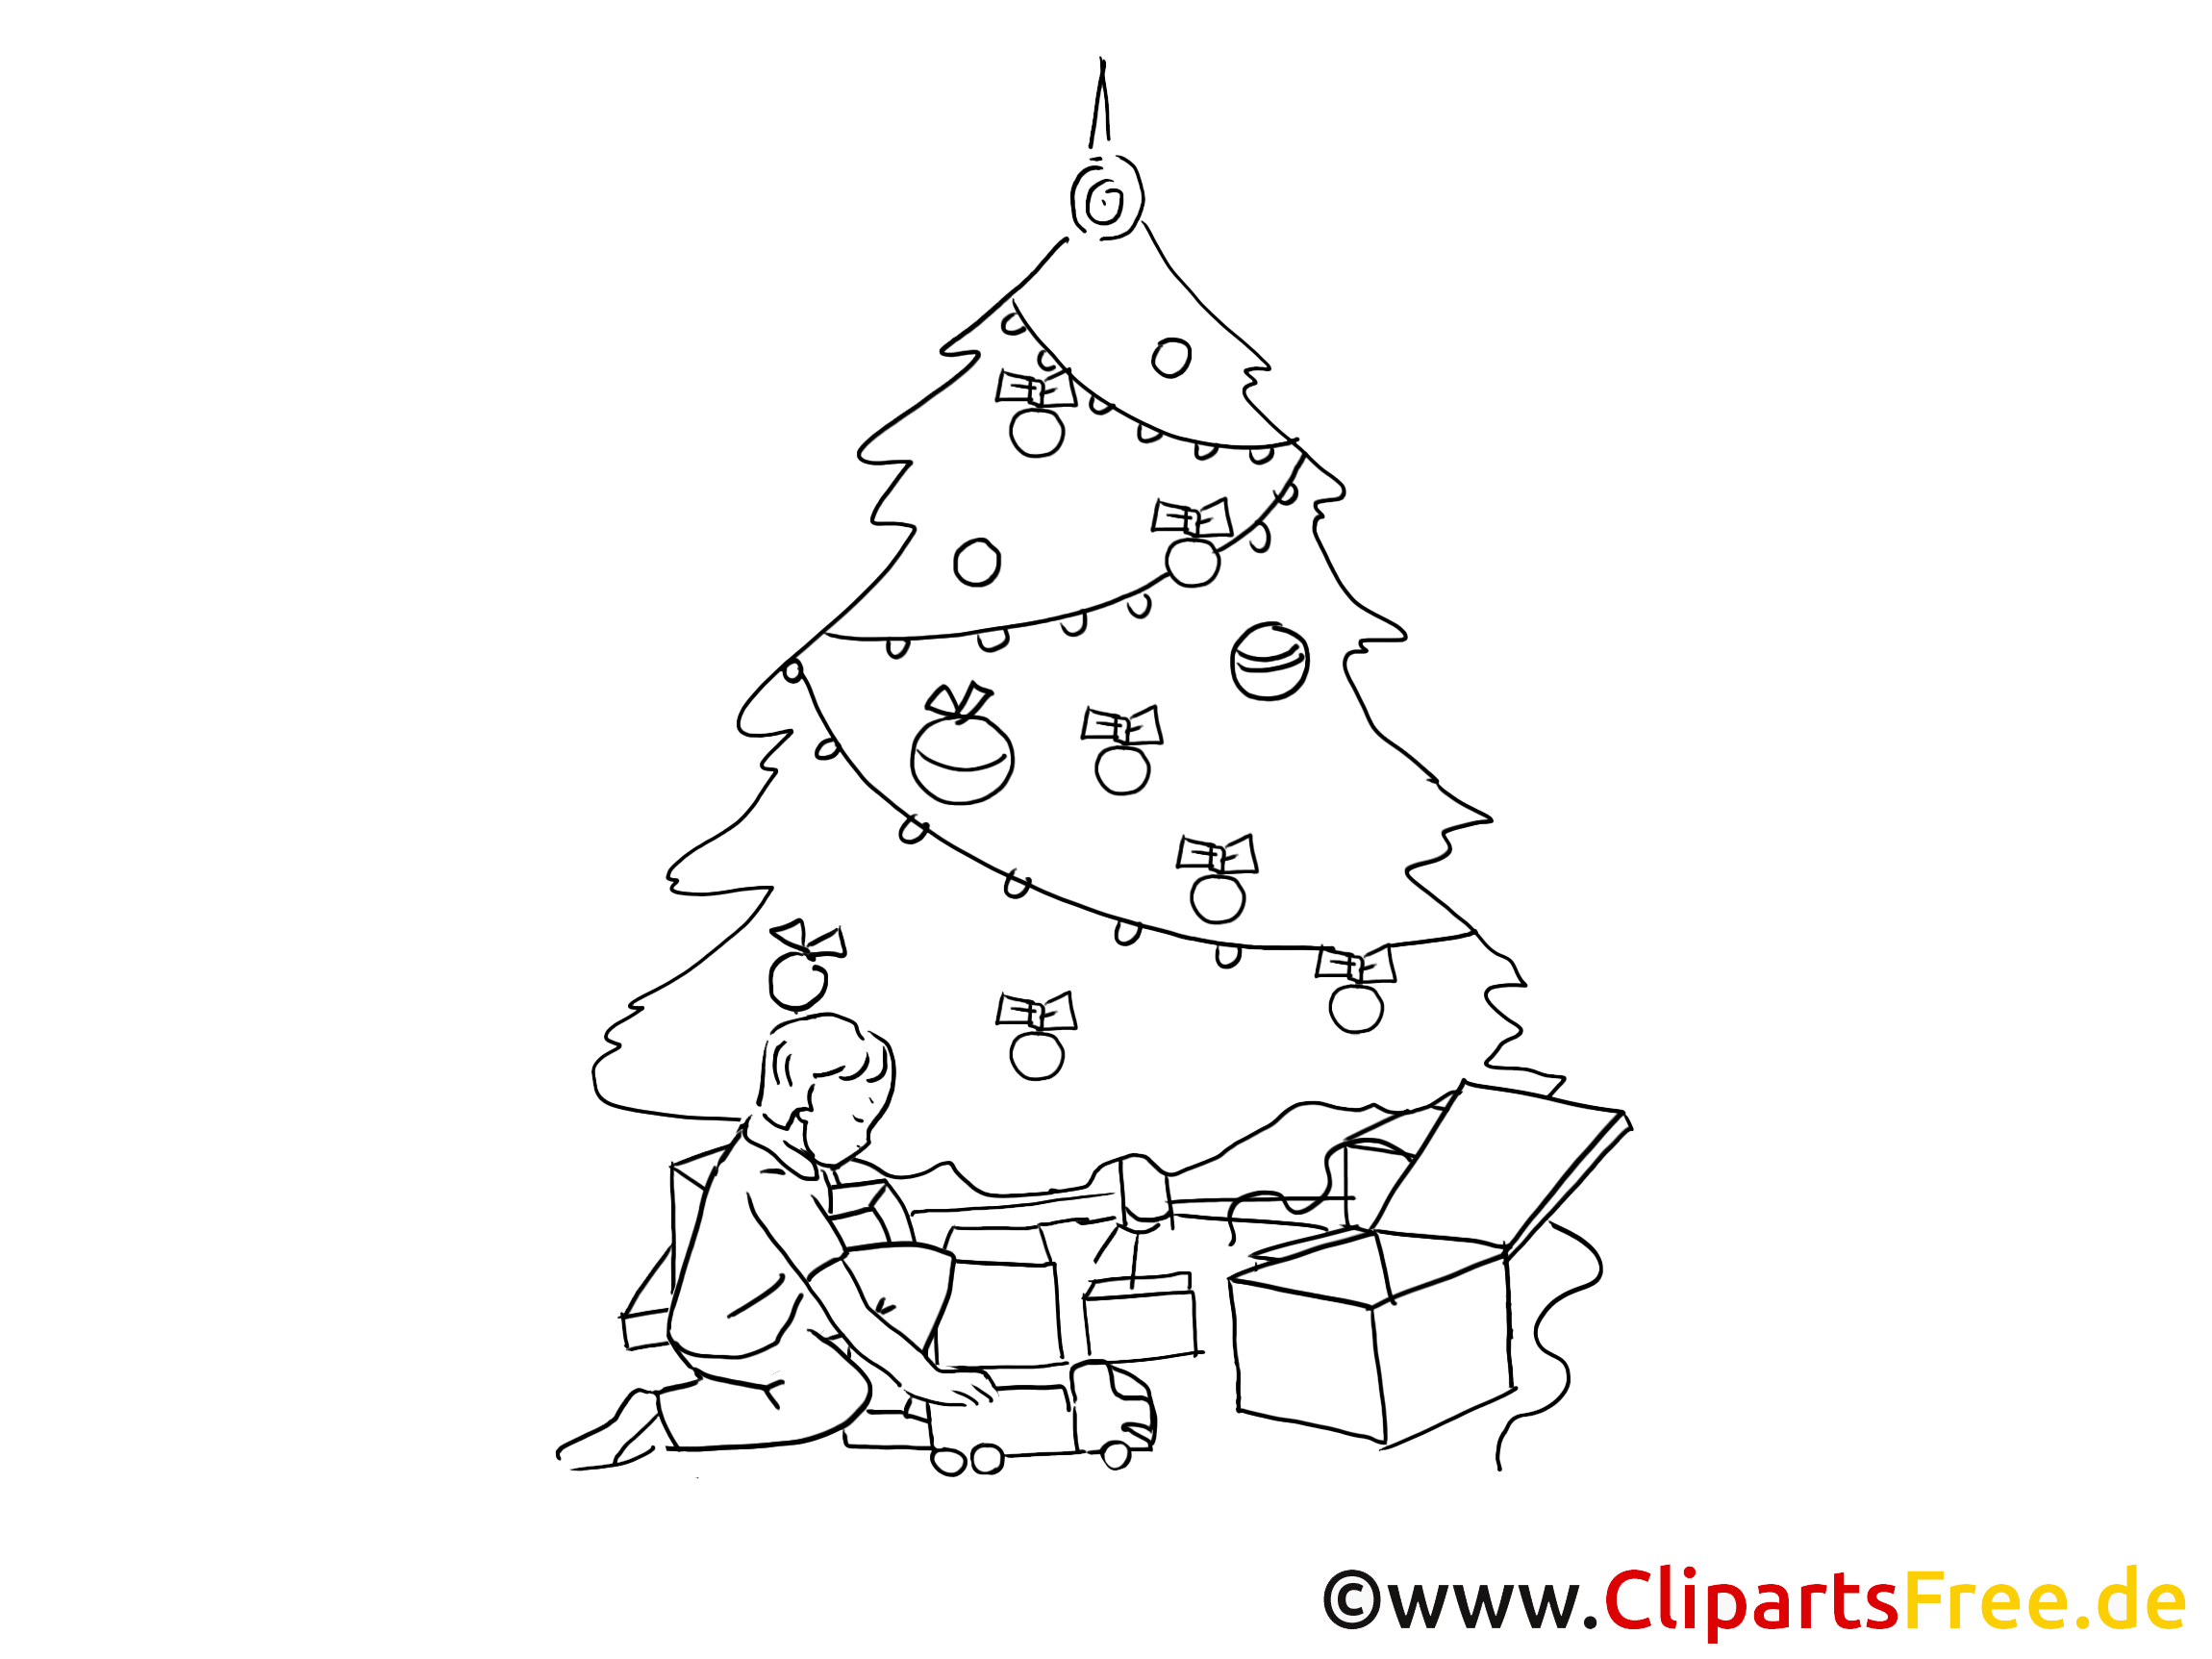 cliparts weihnachten kostenlos - photo #30